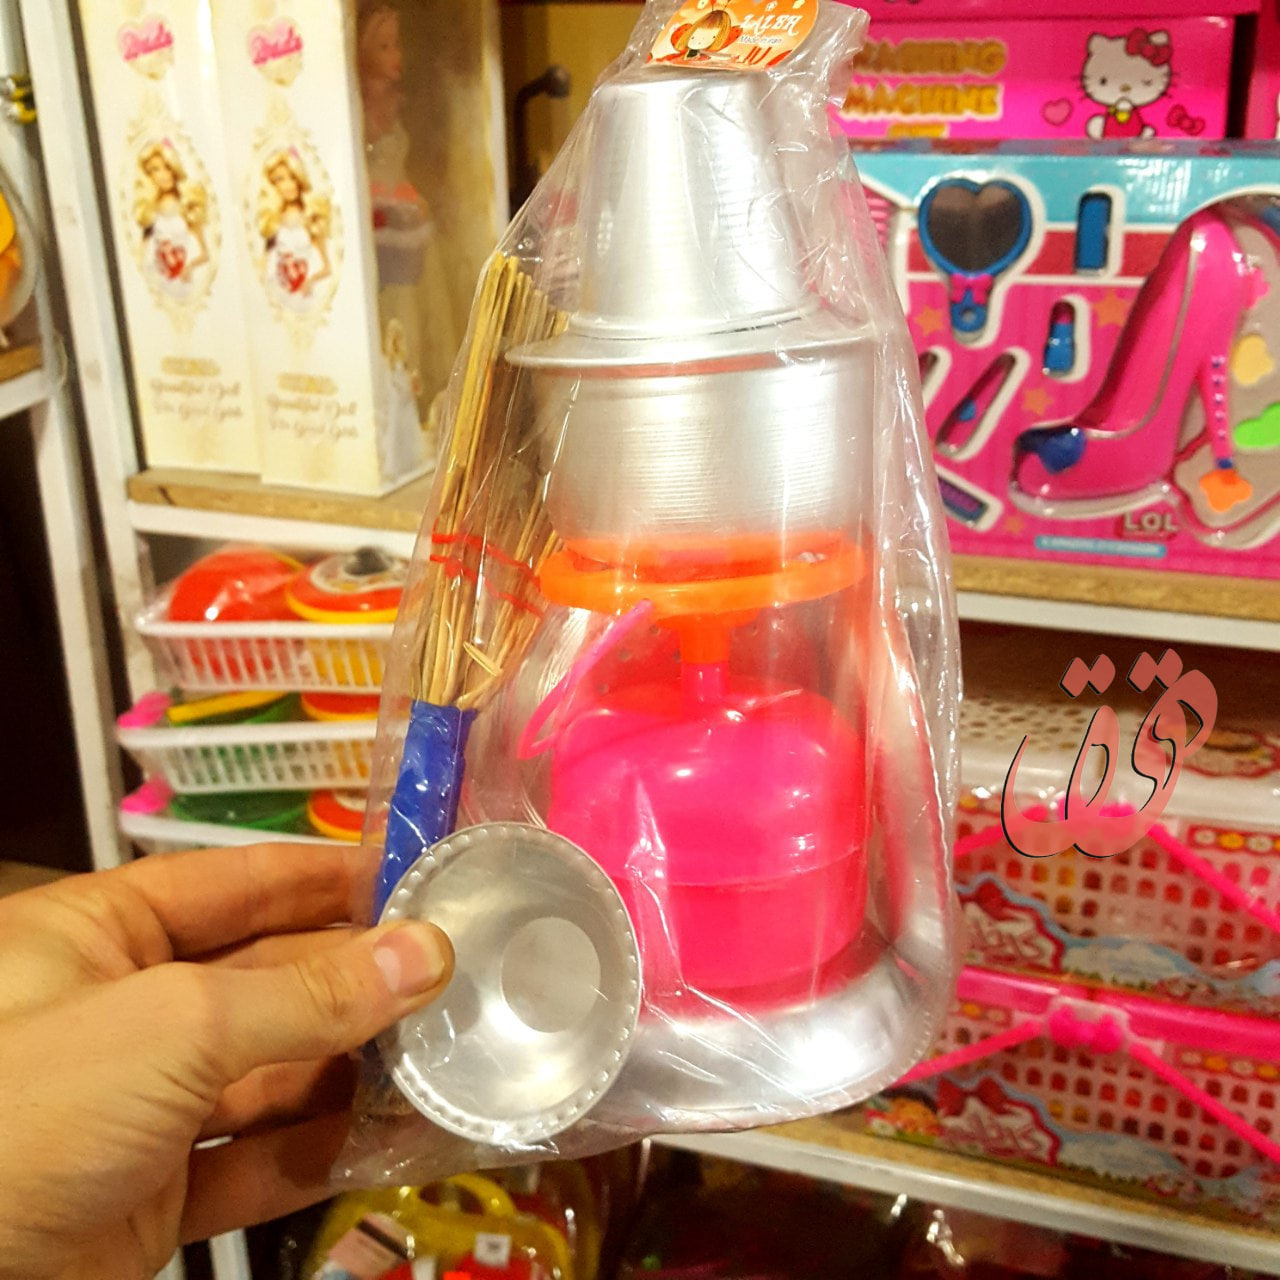     خرید اسباب بازی سرویس روحی با جارو به قیمت مناسب نسبت به بازار 